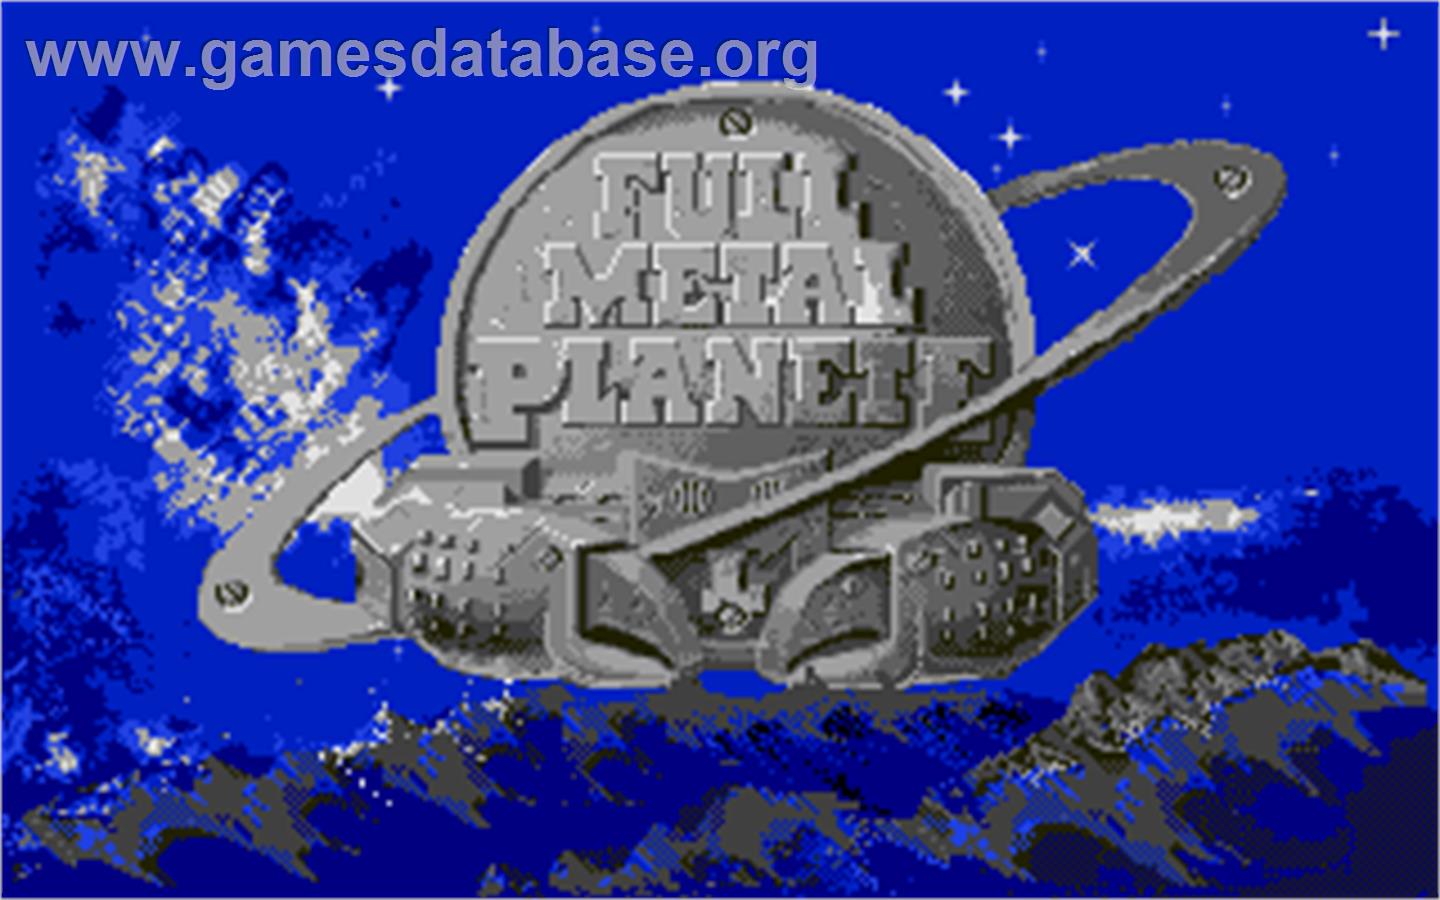 Full Metal Planete - Atari ST - Artwork - Title Screen